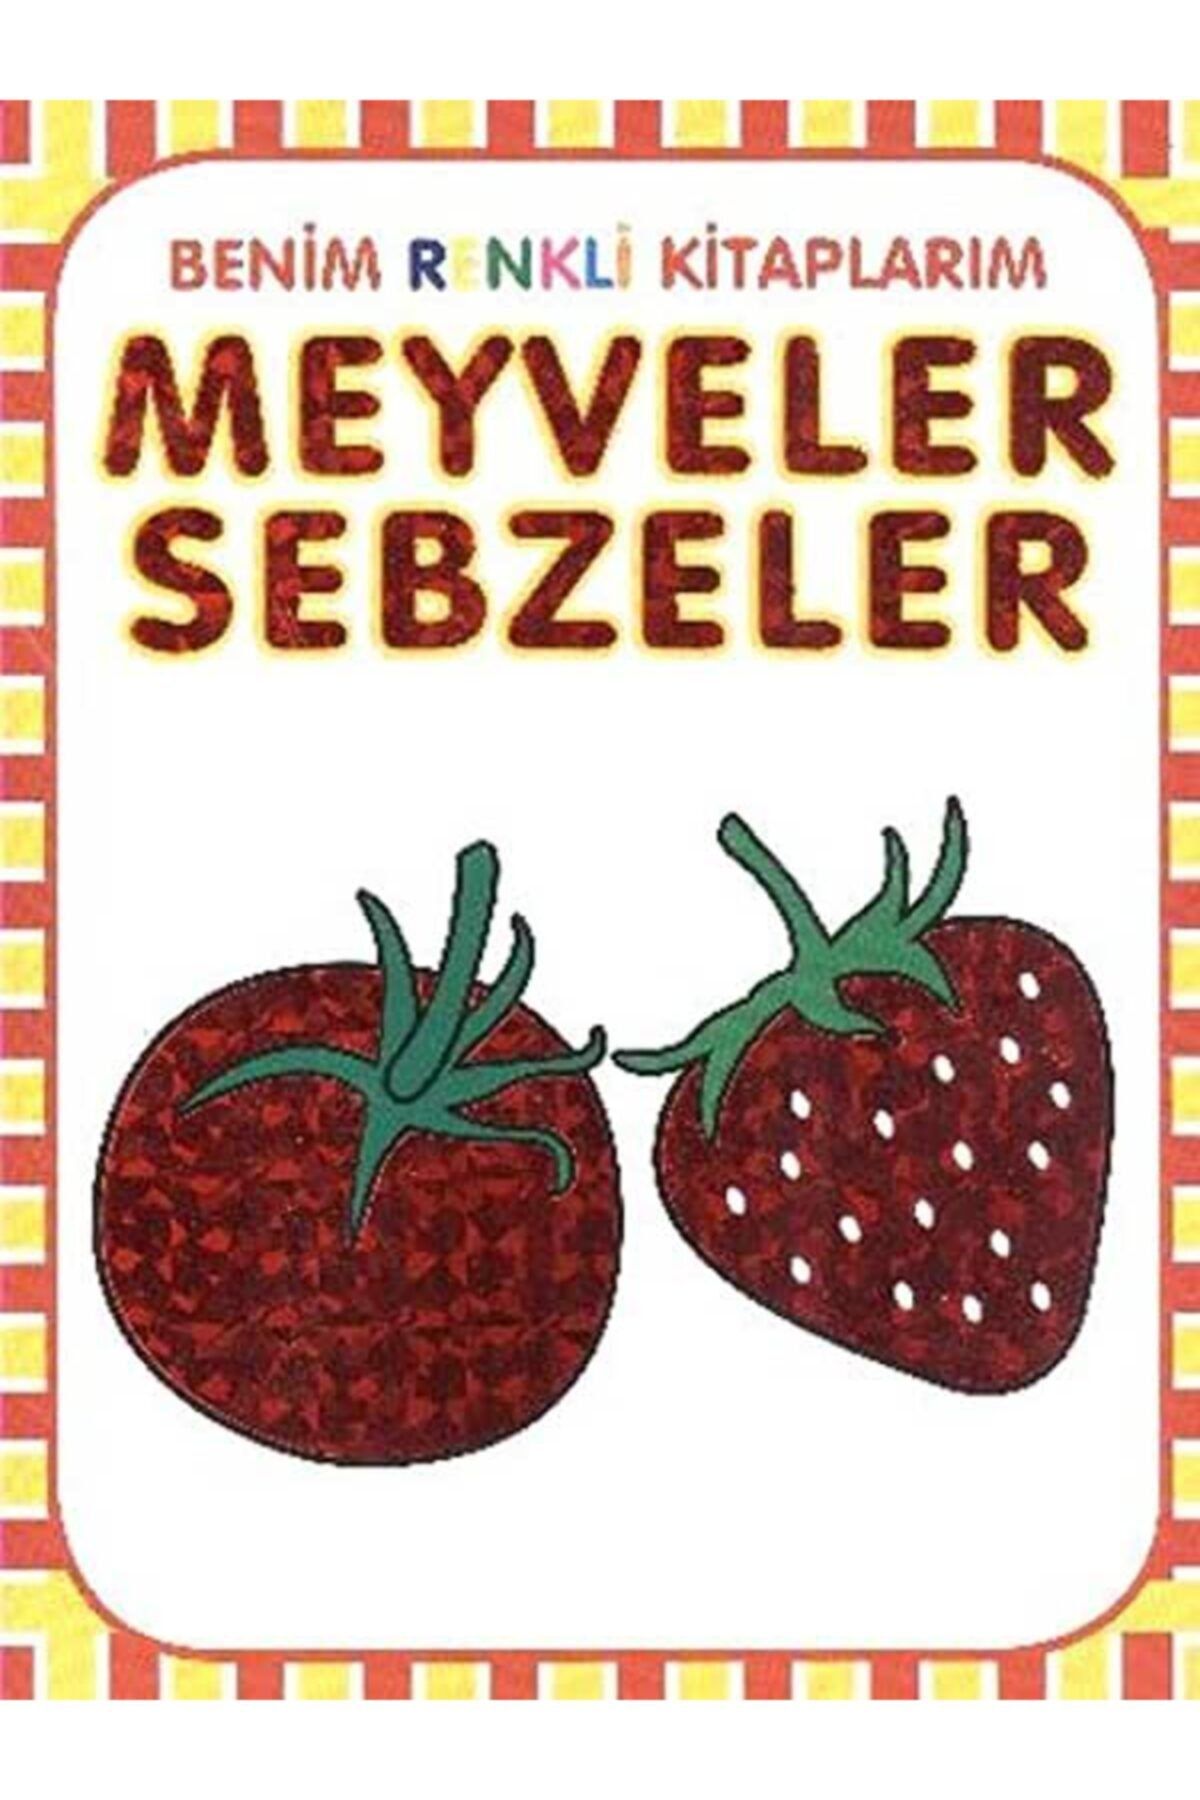 Parıltı Yayınları Benim Renkli Kitaplarım Meyveler Sebzeler